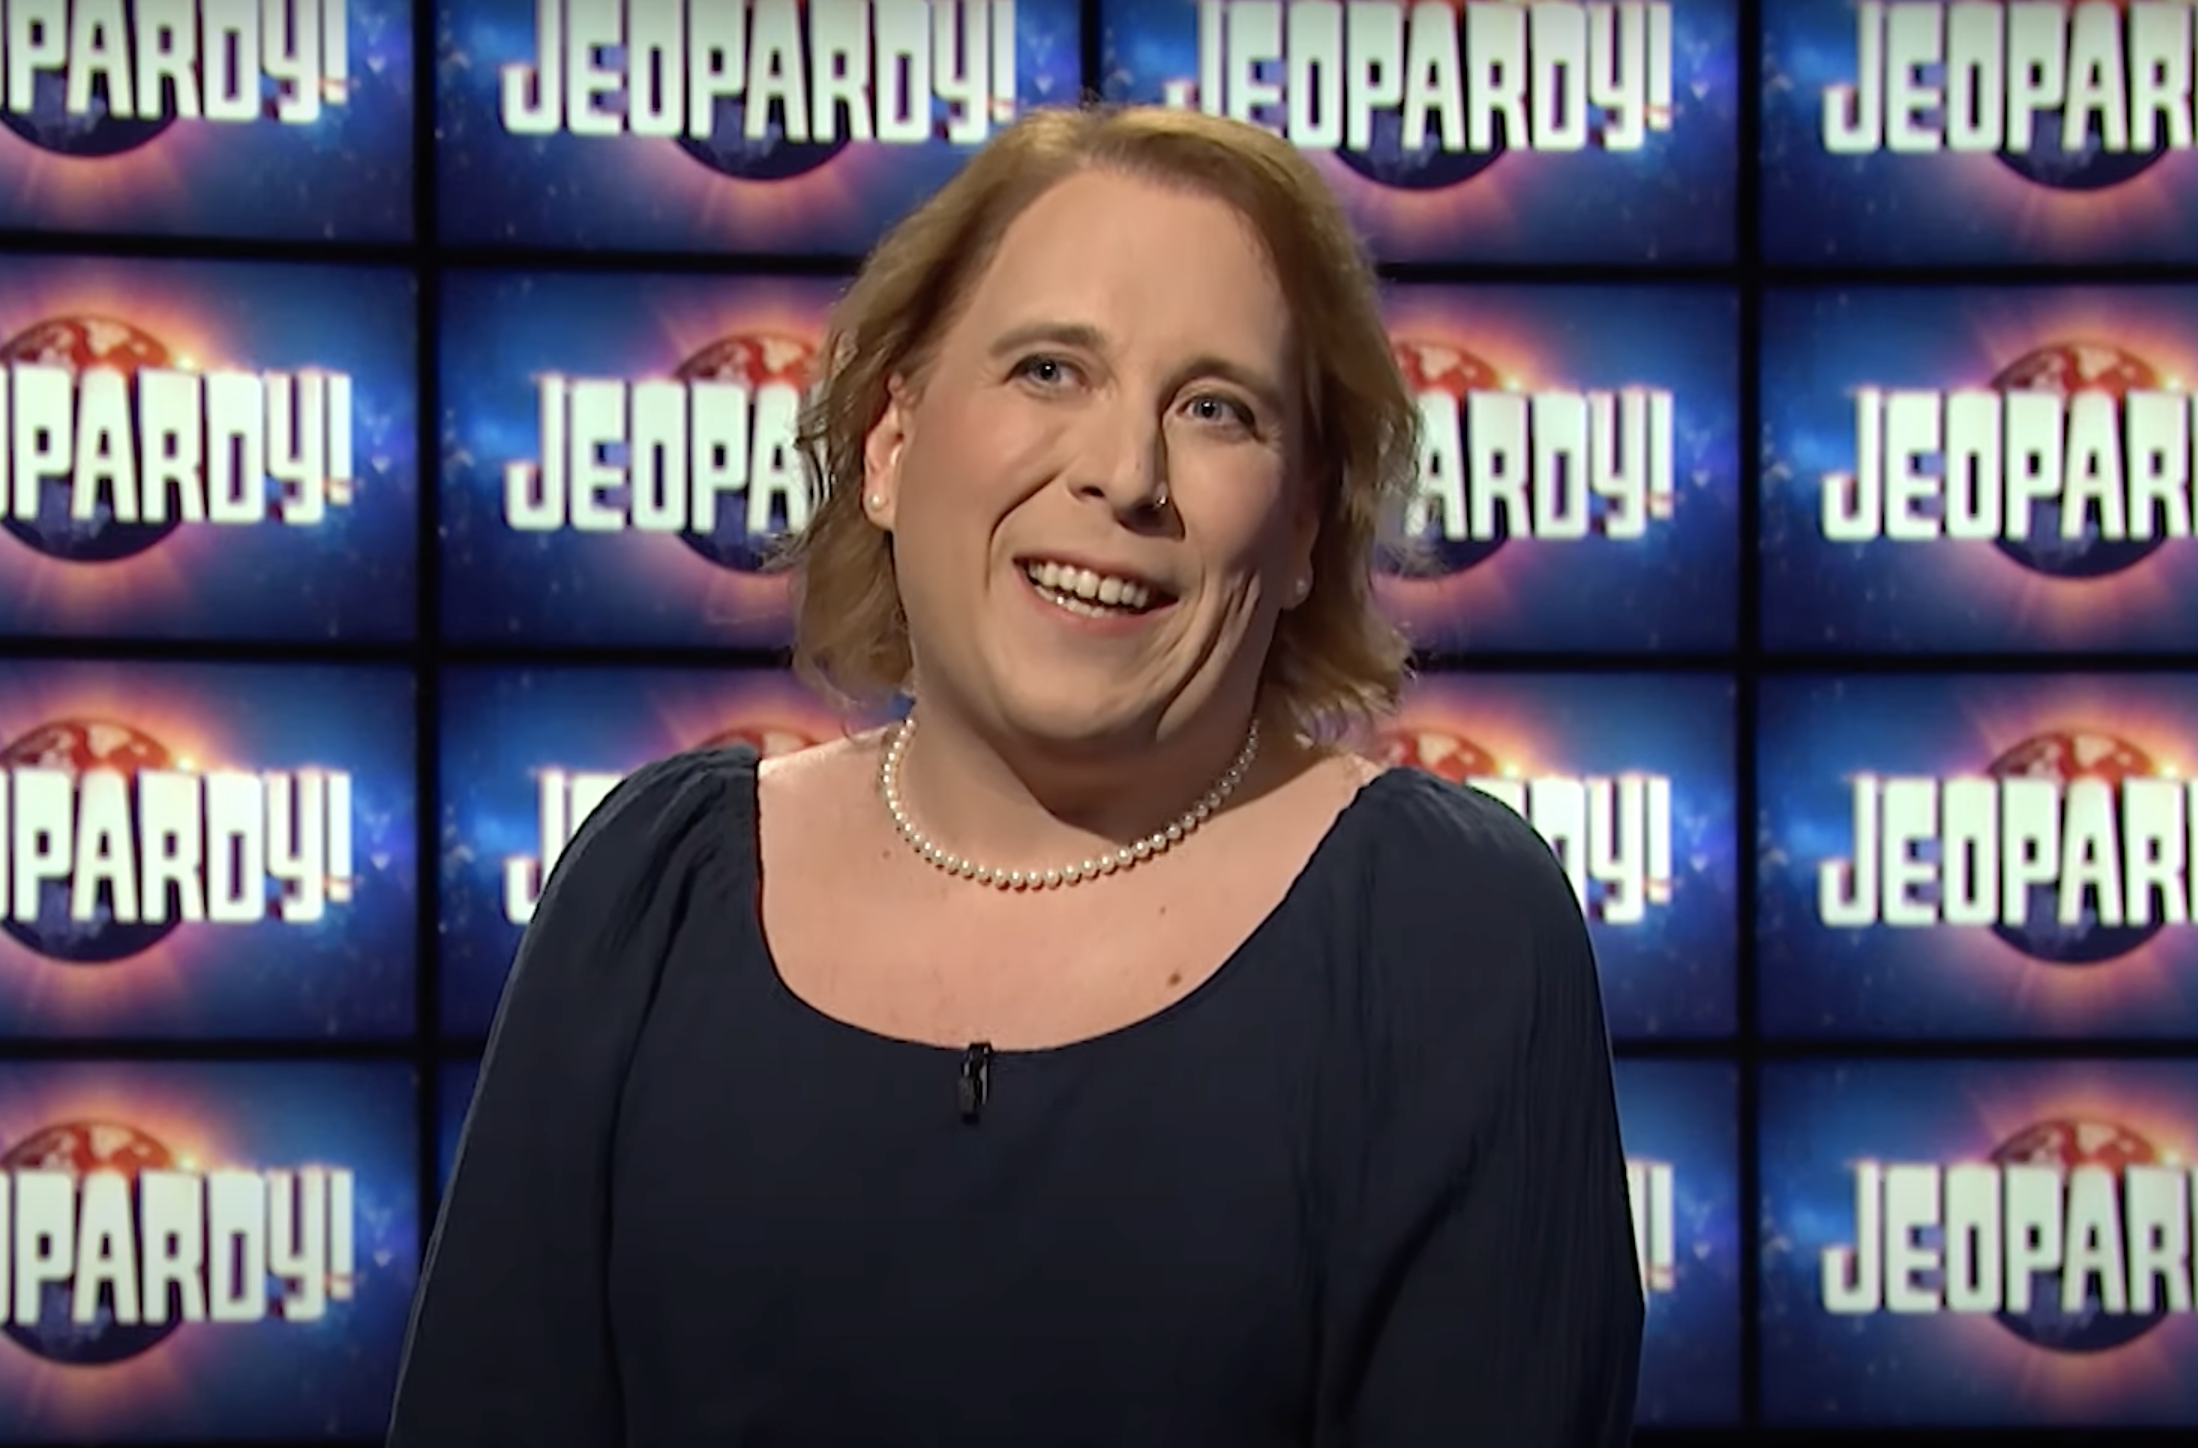 Amy Schneider on the set of Jeopardy